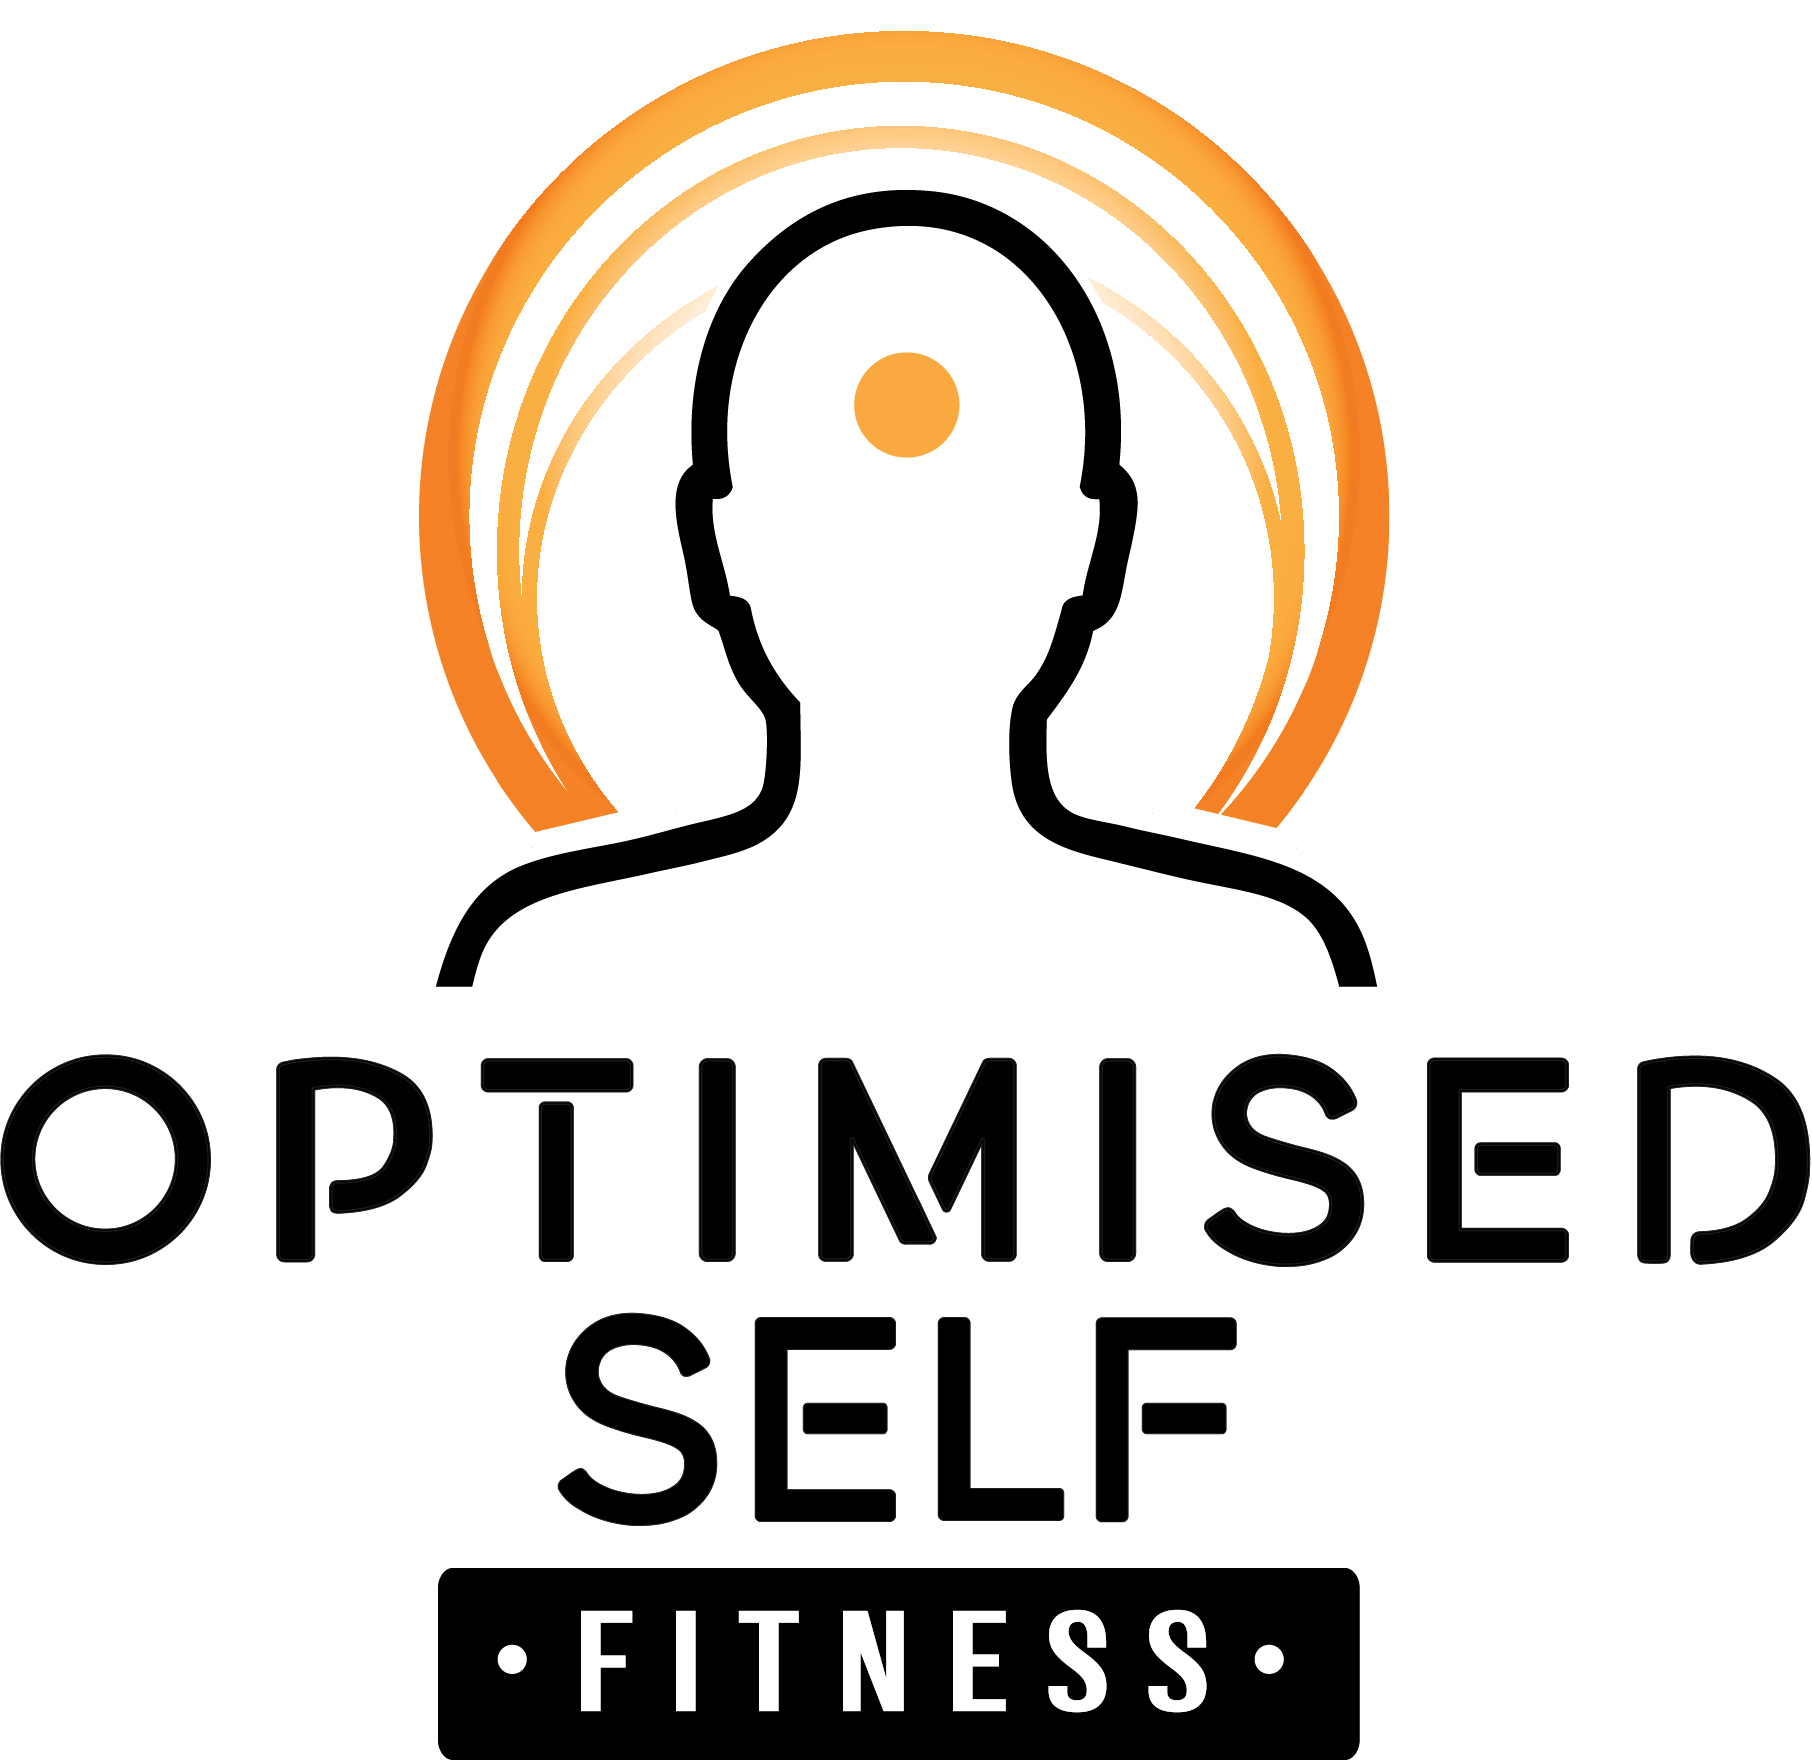 Optimised self fitness